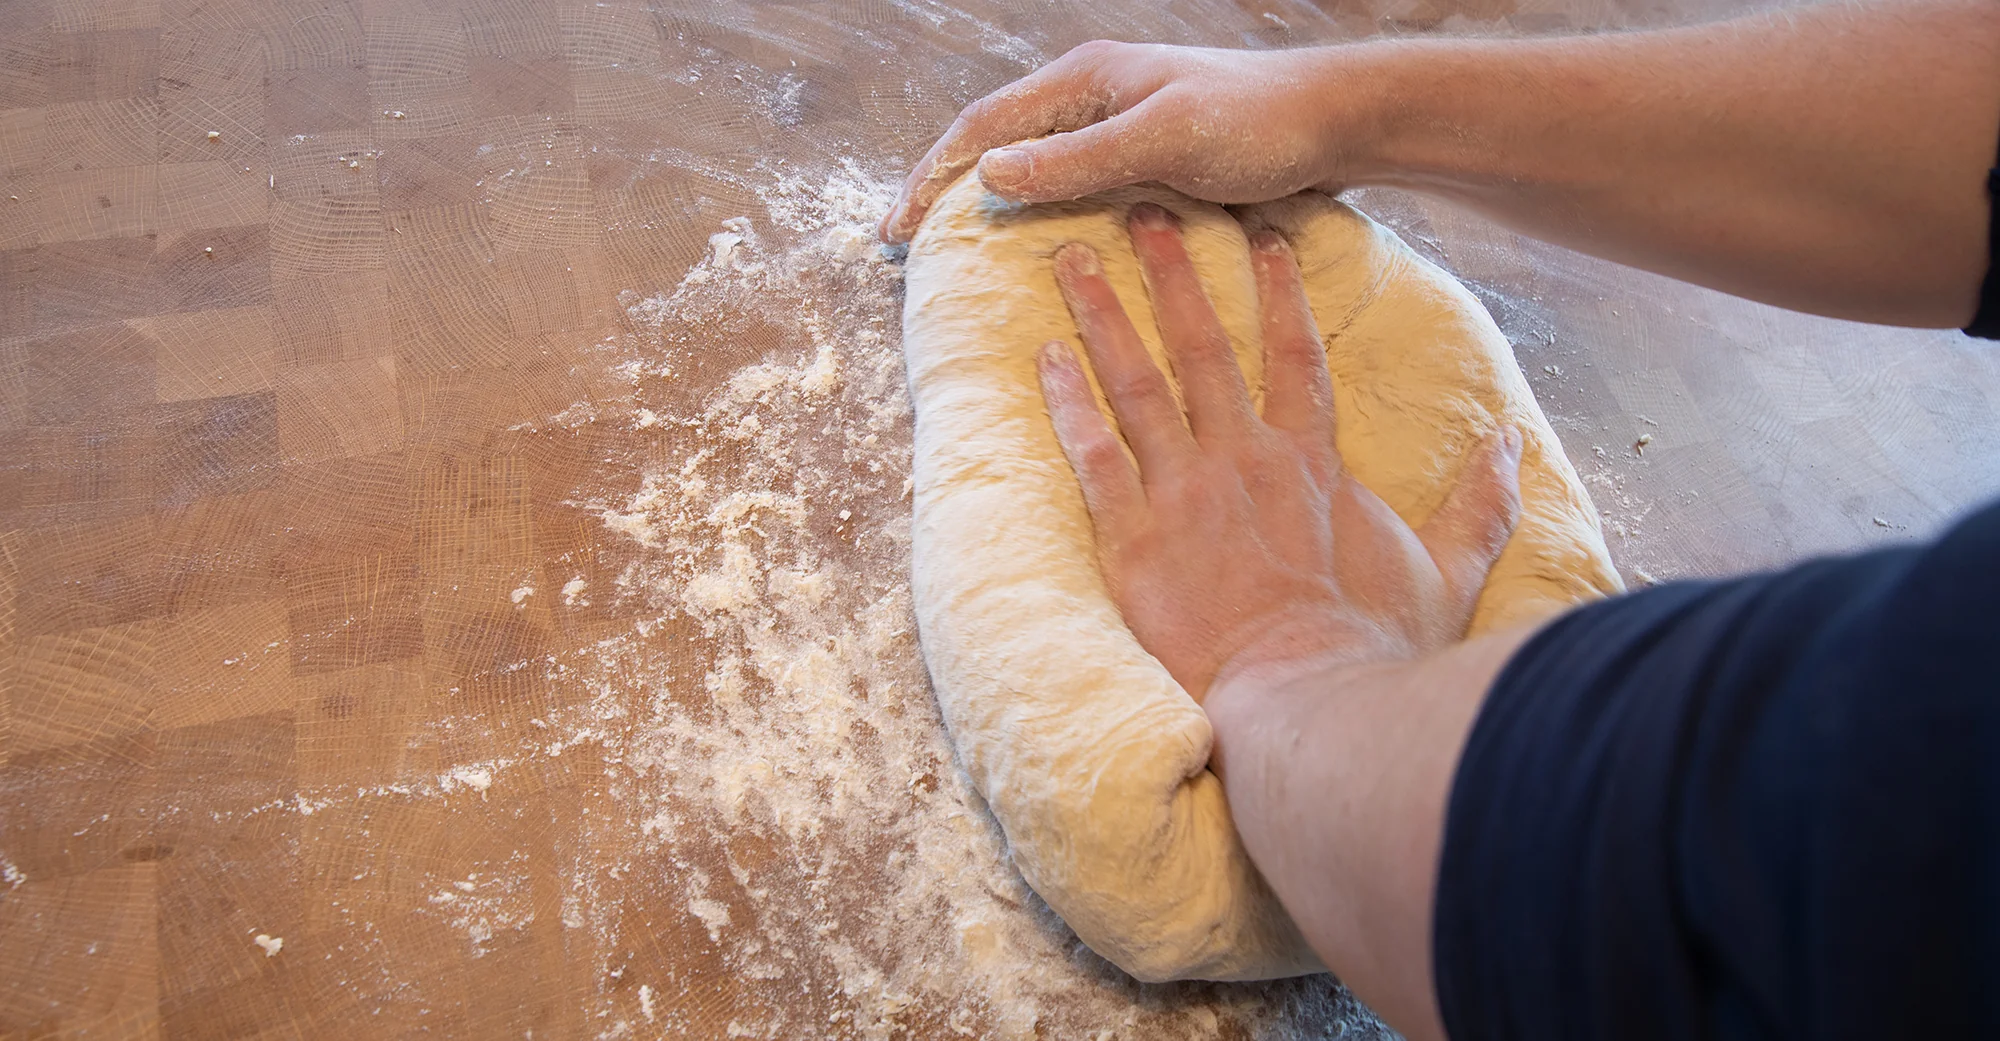 Kneading dough for pretzels